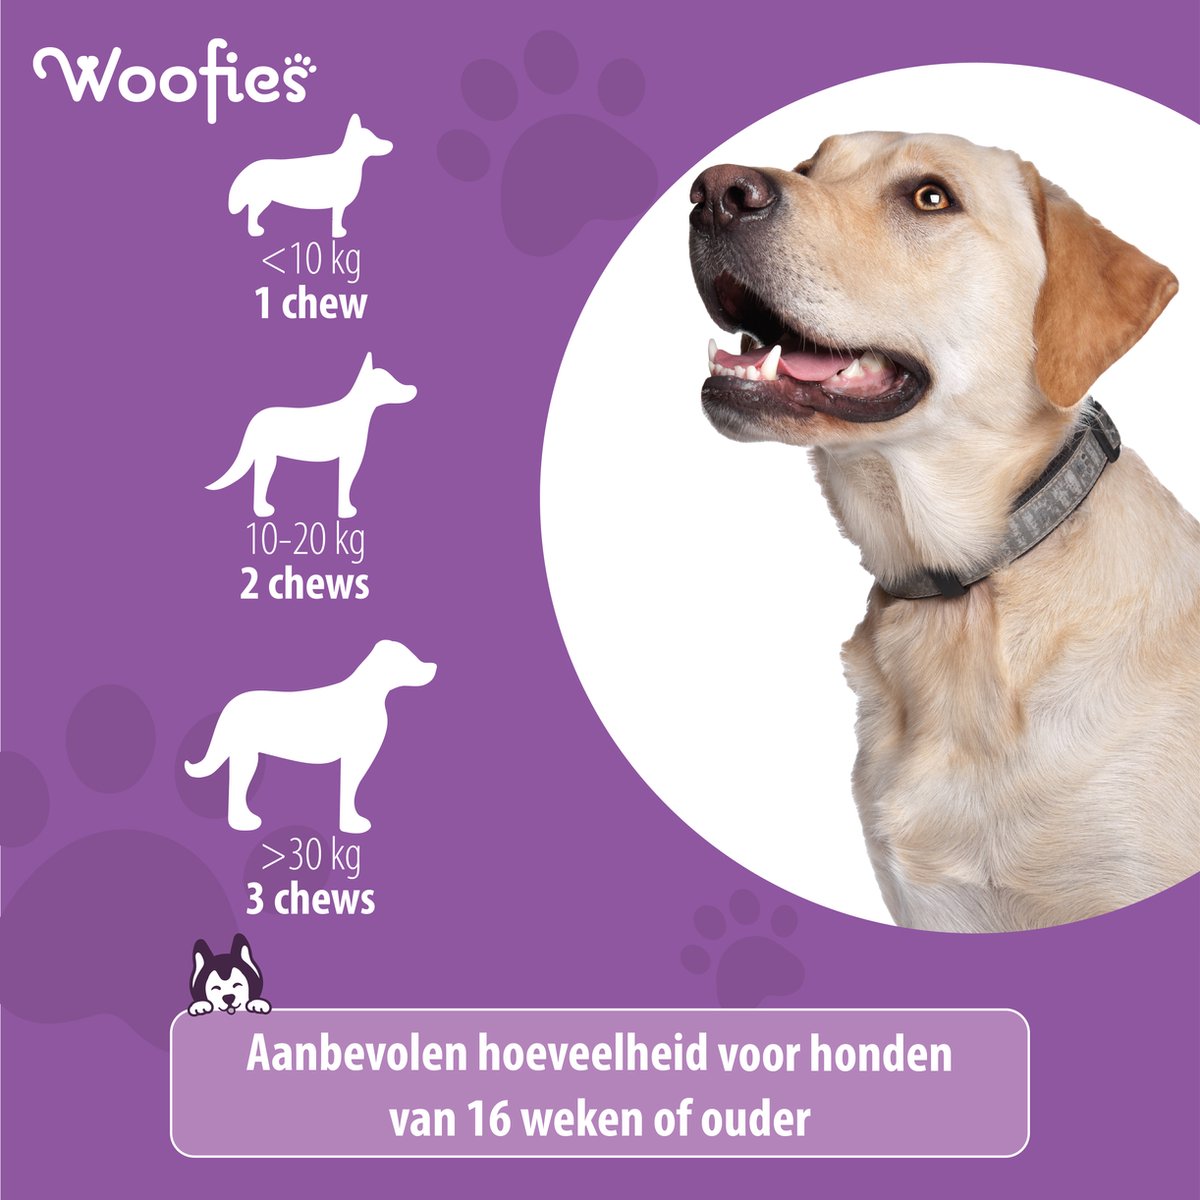 Ingrediëntenlijst en voordelen van Woofies Probiotica voor honden, verbetert welzijn.